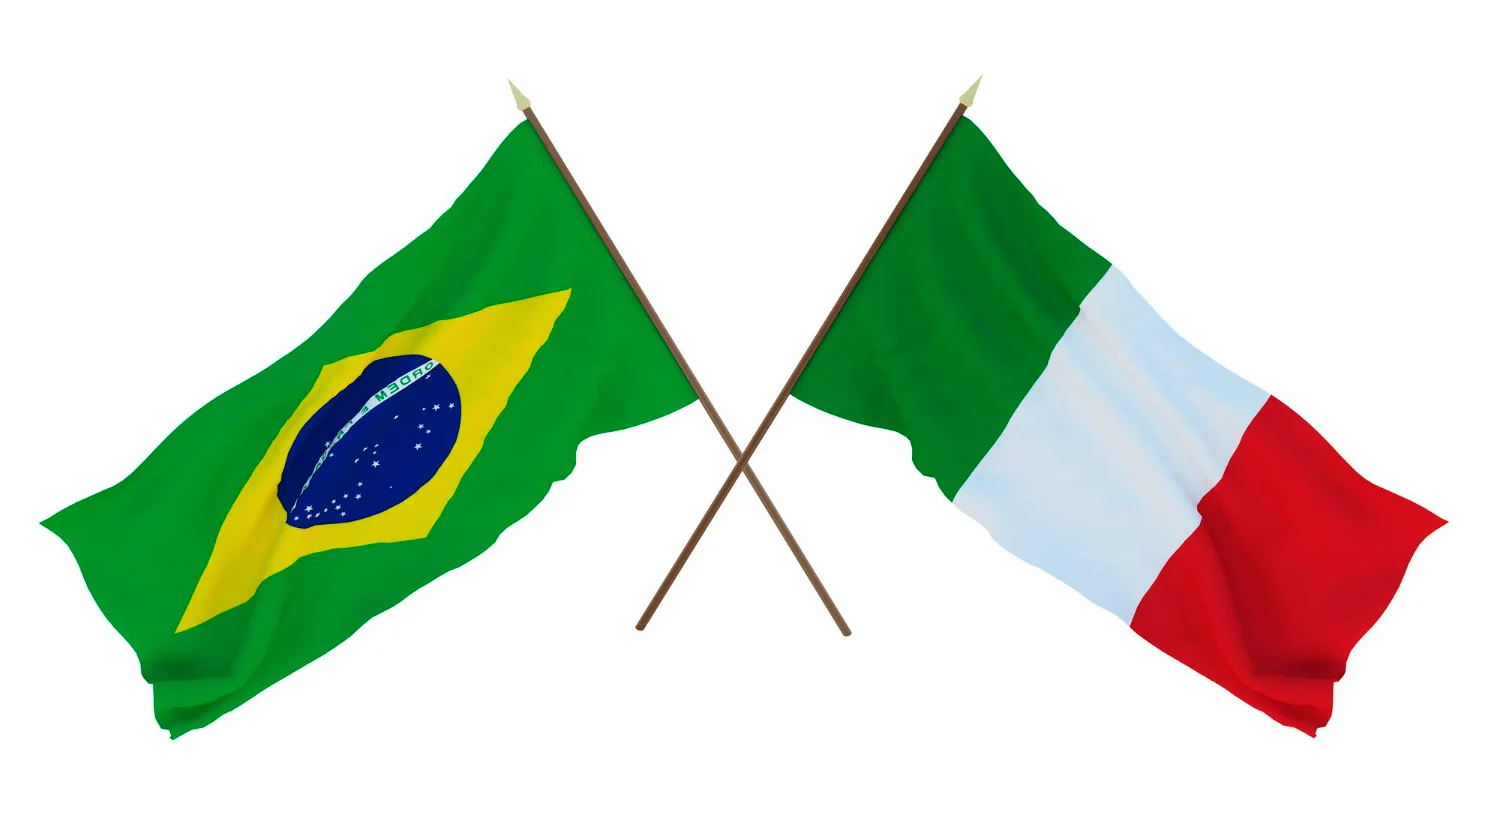 Tradutor italiano para português: saiba como contratar